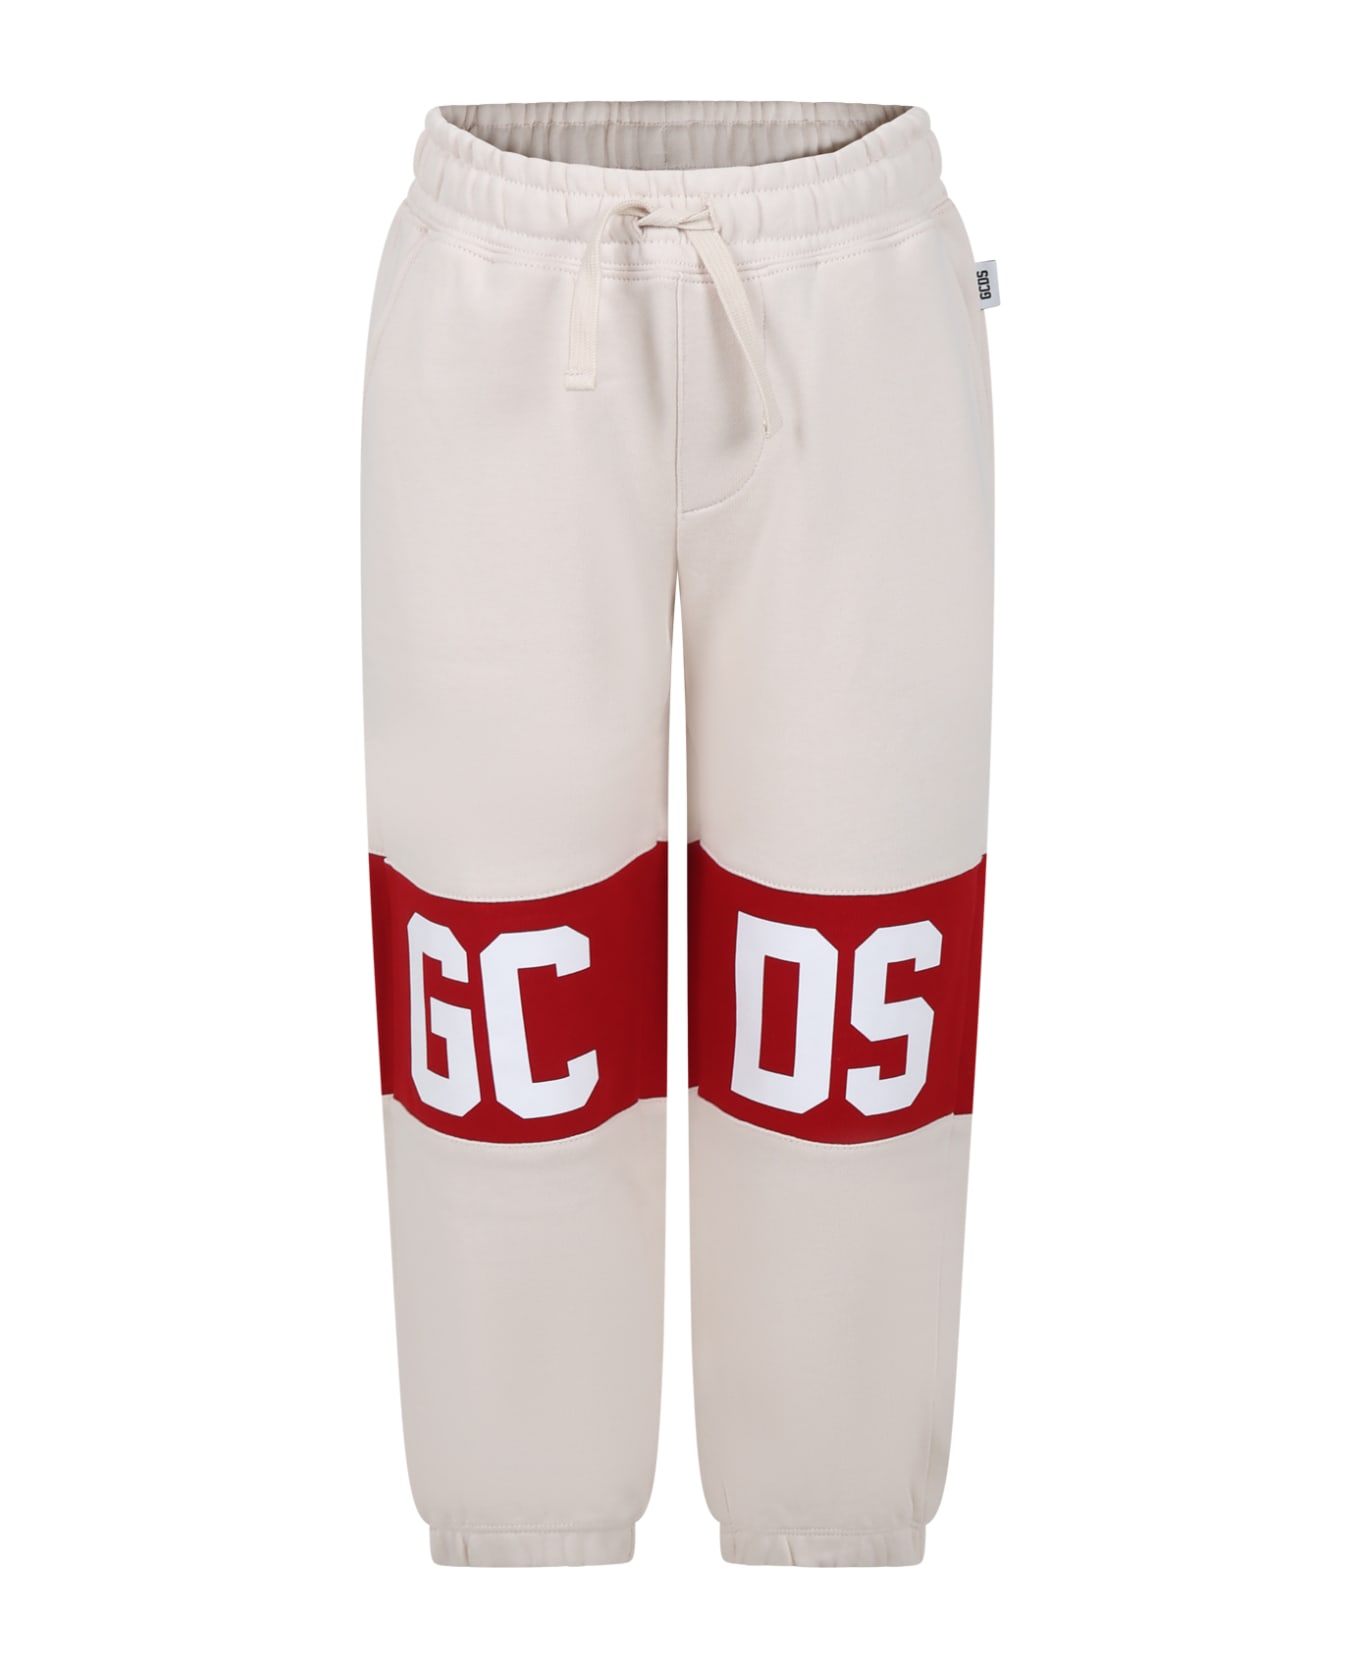 GCDS Mini Beige Trousers For Boy With Logo - Beige